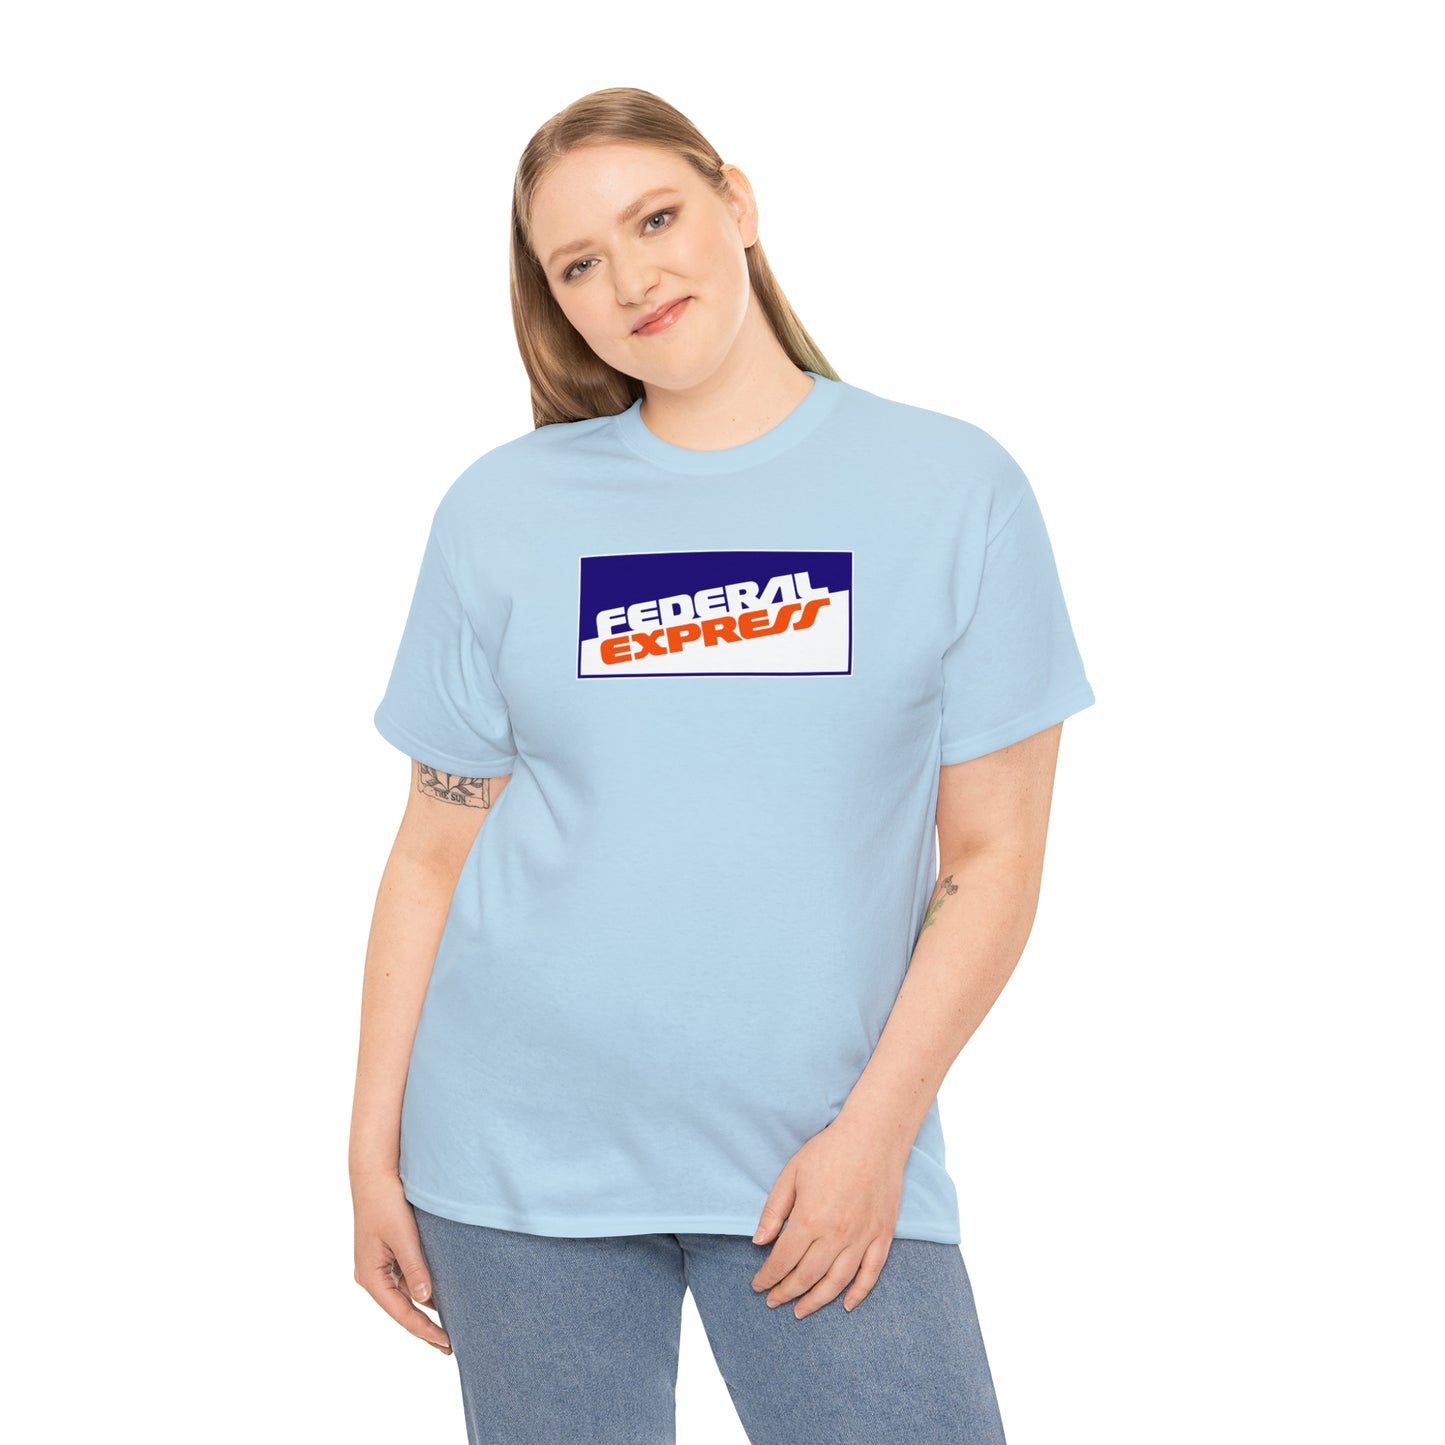 Federal Express T-Shirt